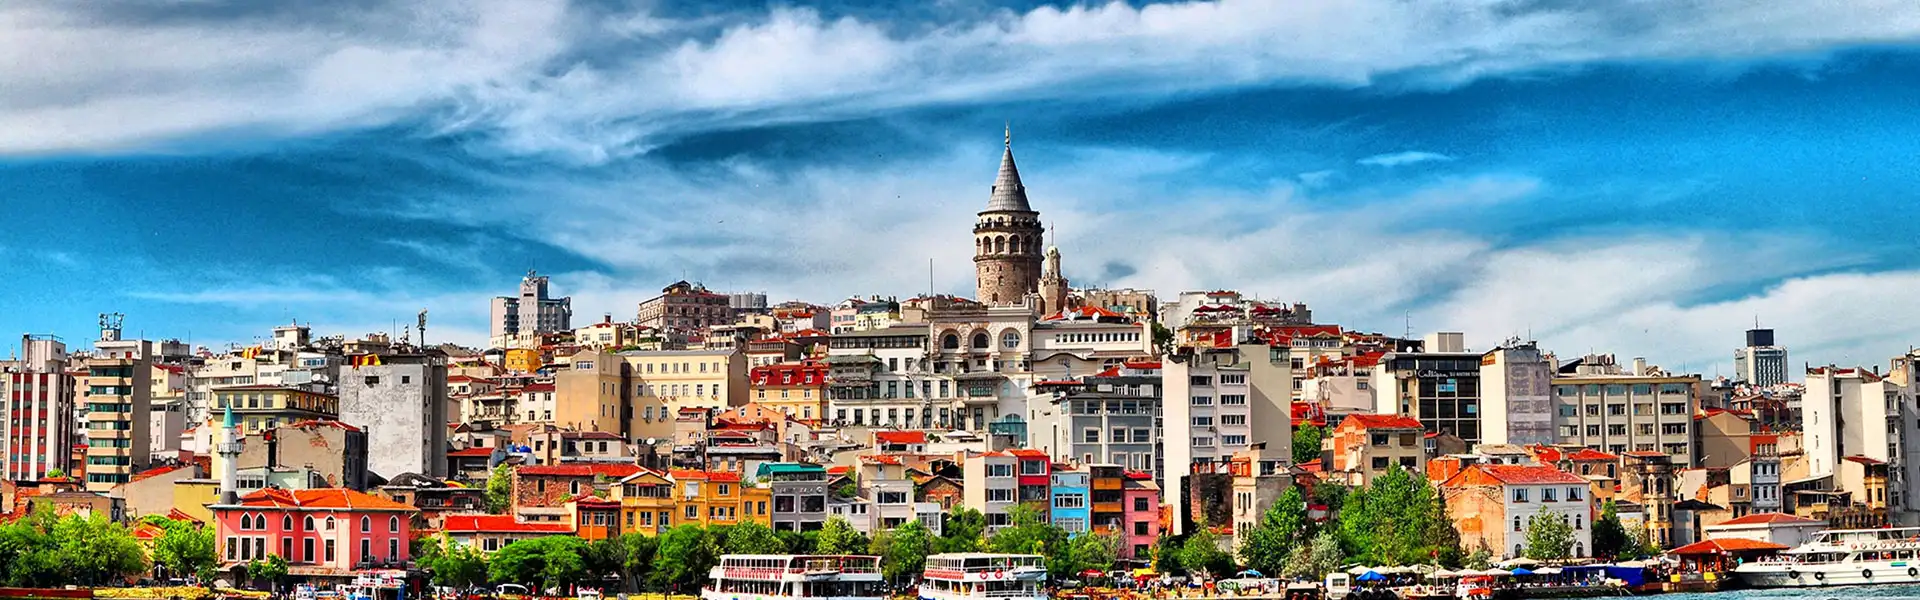 لیست کامل تورهای استانبول